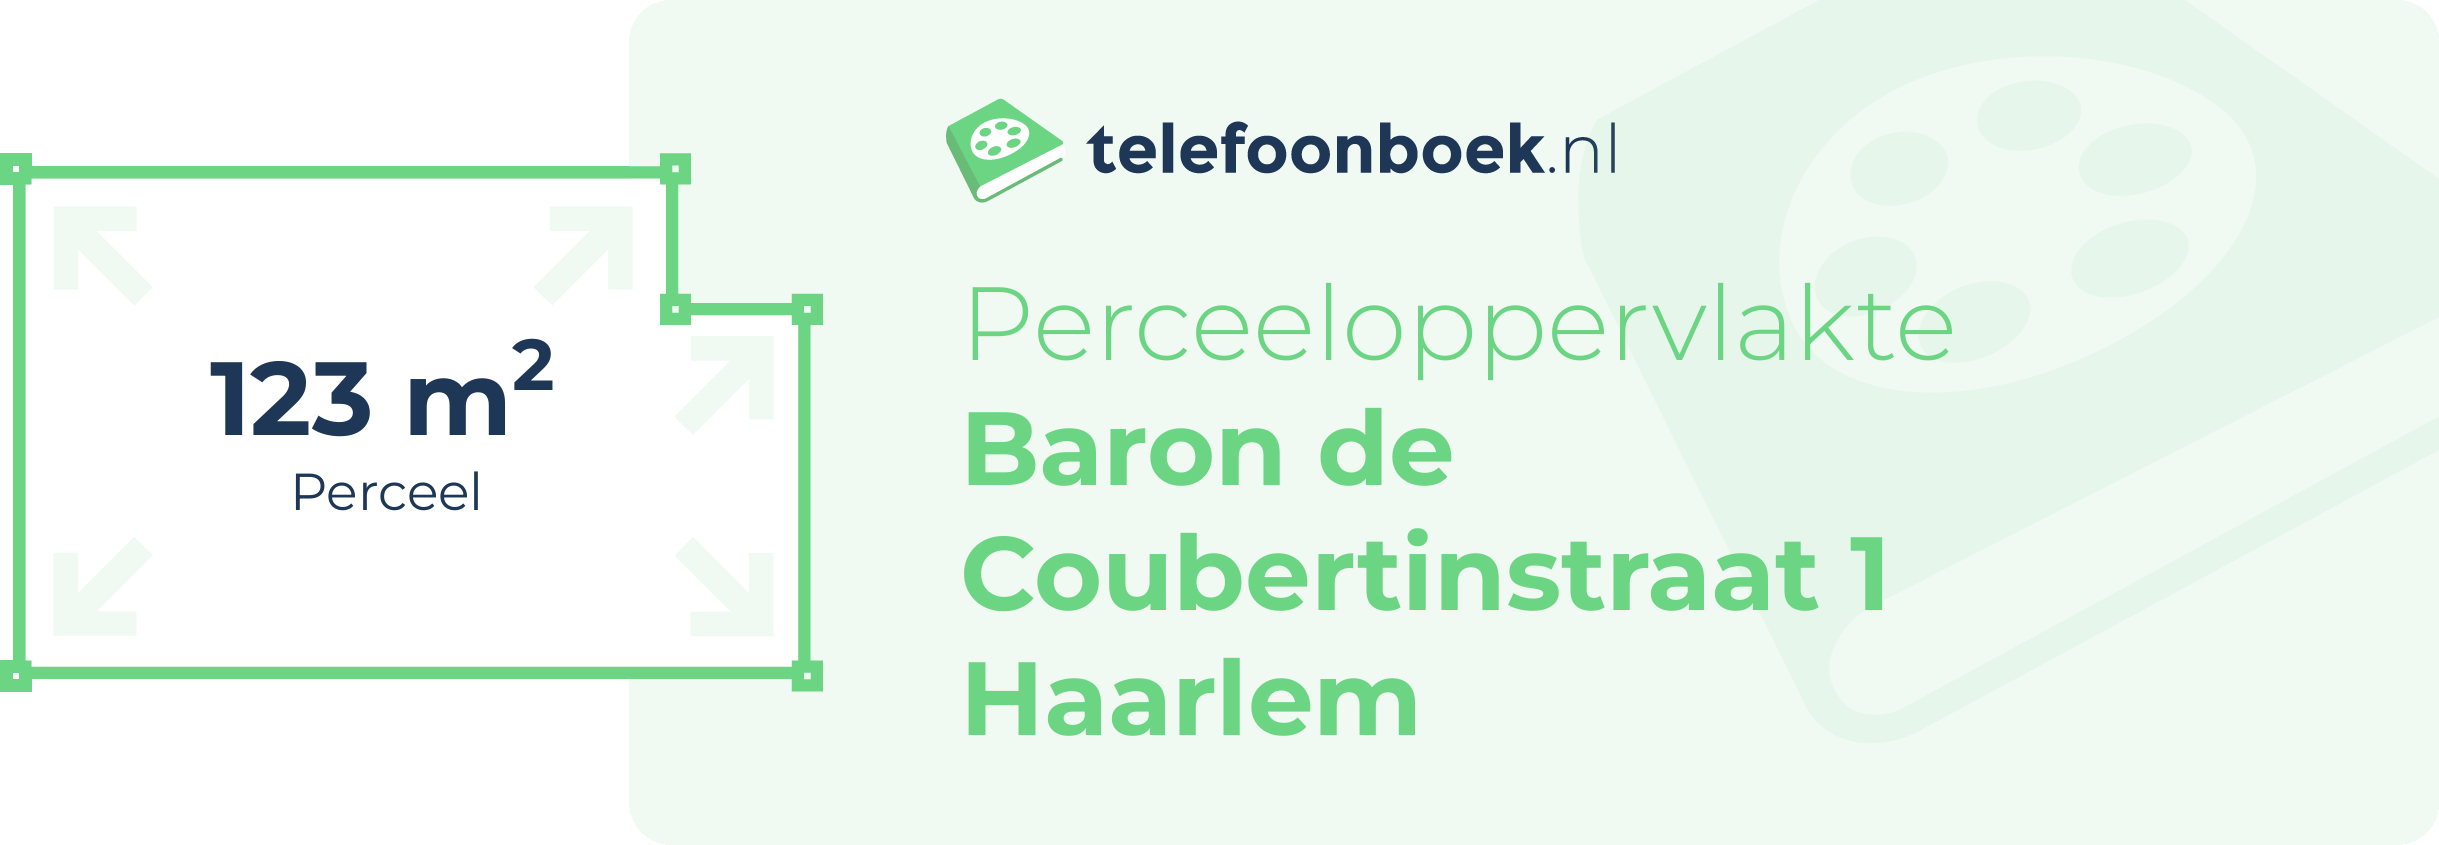 Perceeloppervlakte Baron De Coubertinstraat 1 Haarlem